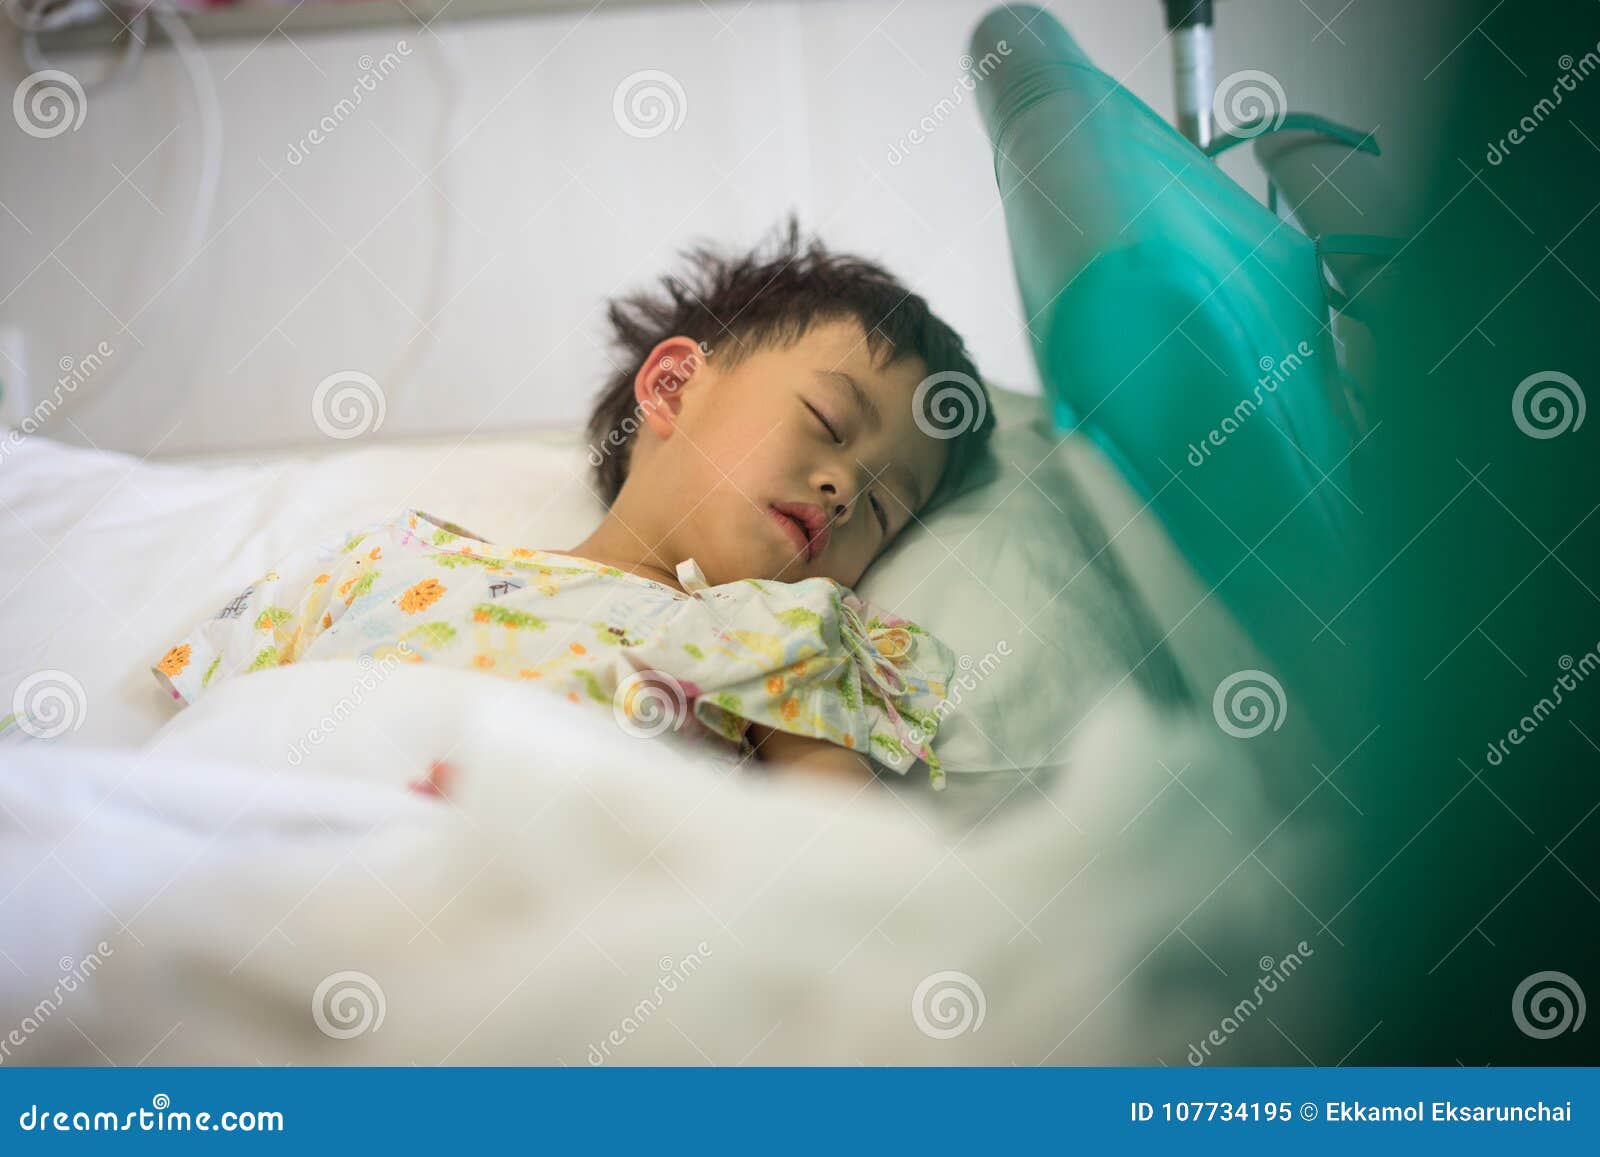 Фото Мальчика В Больнице